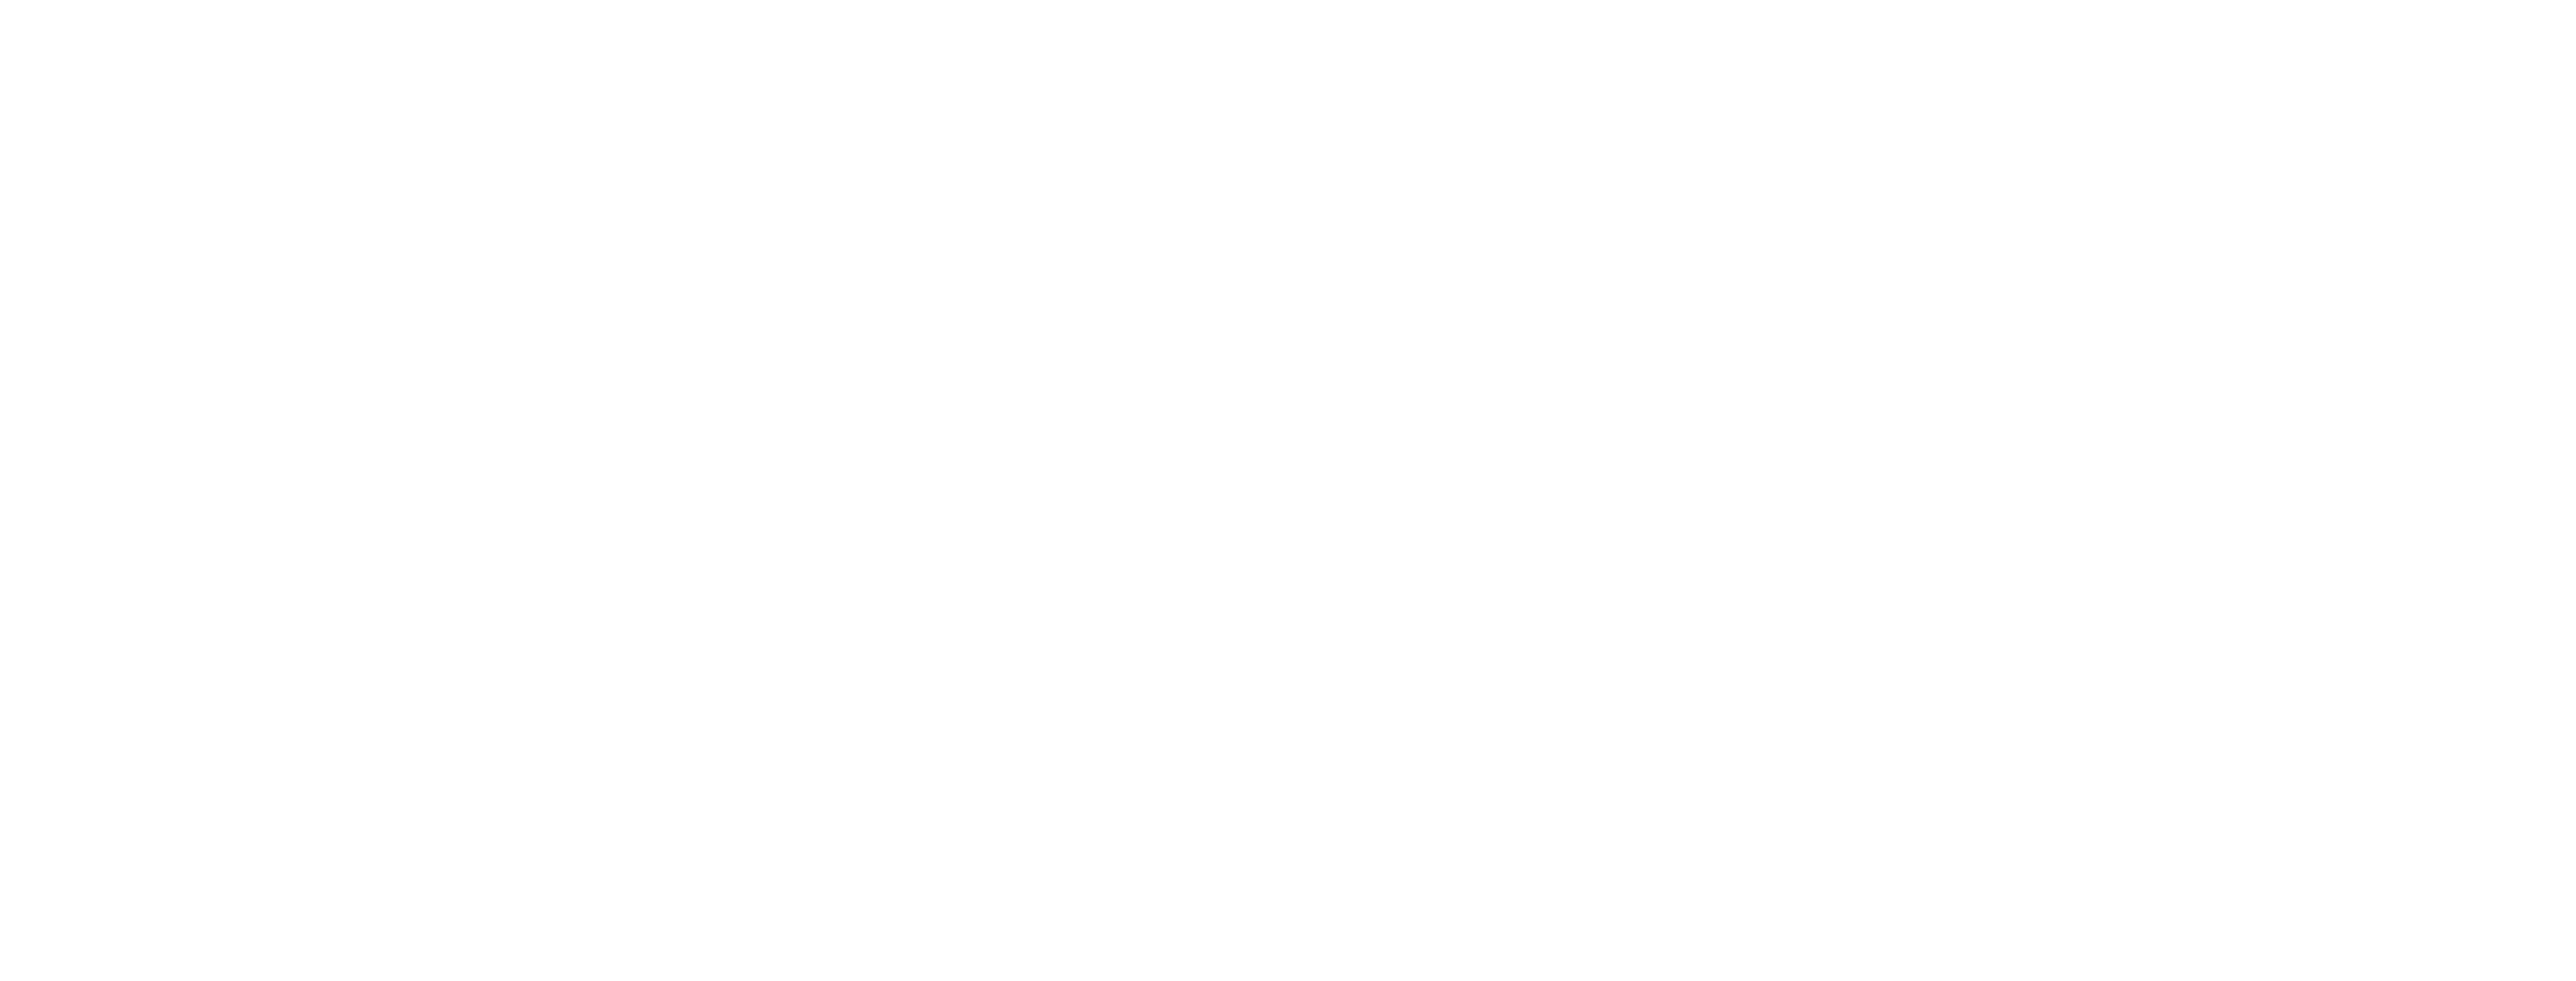 Glyph Logo